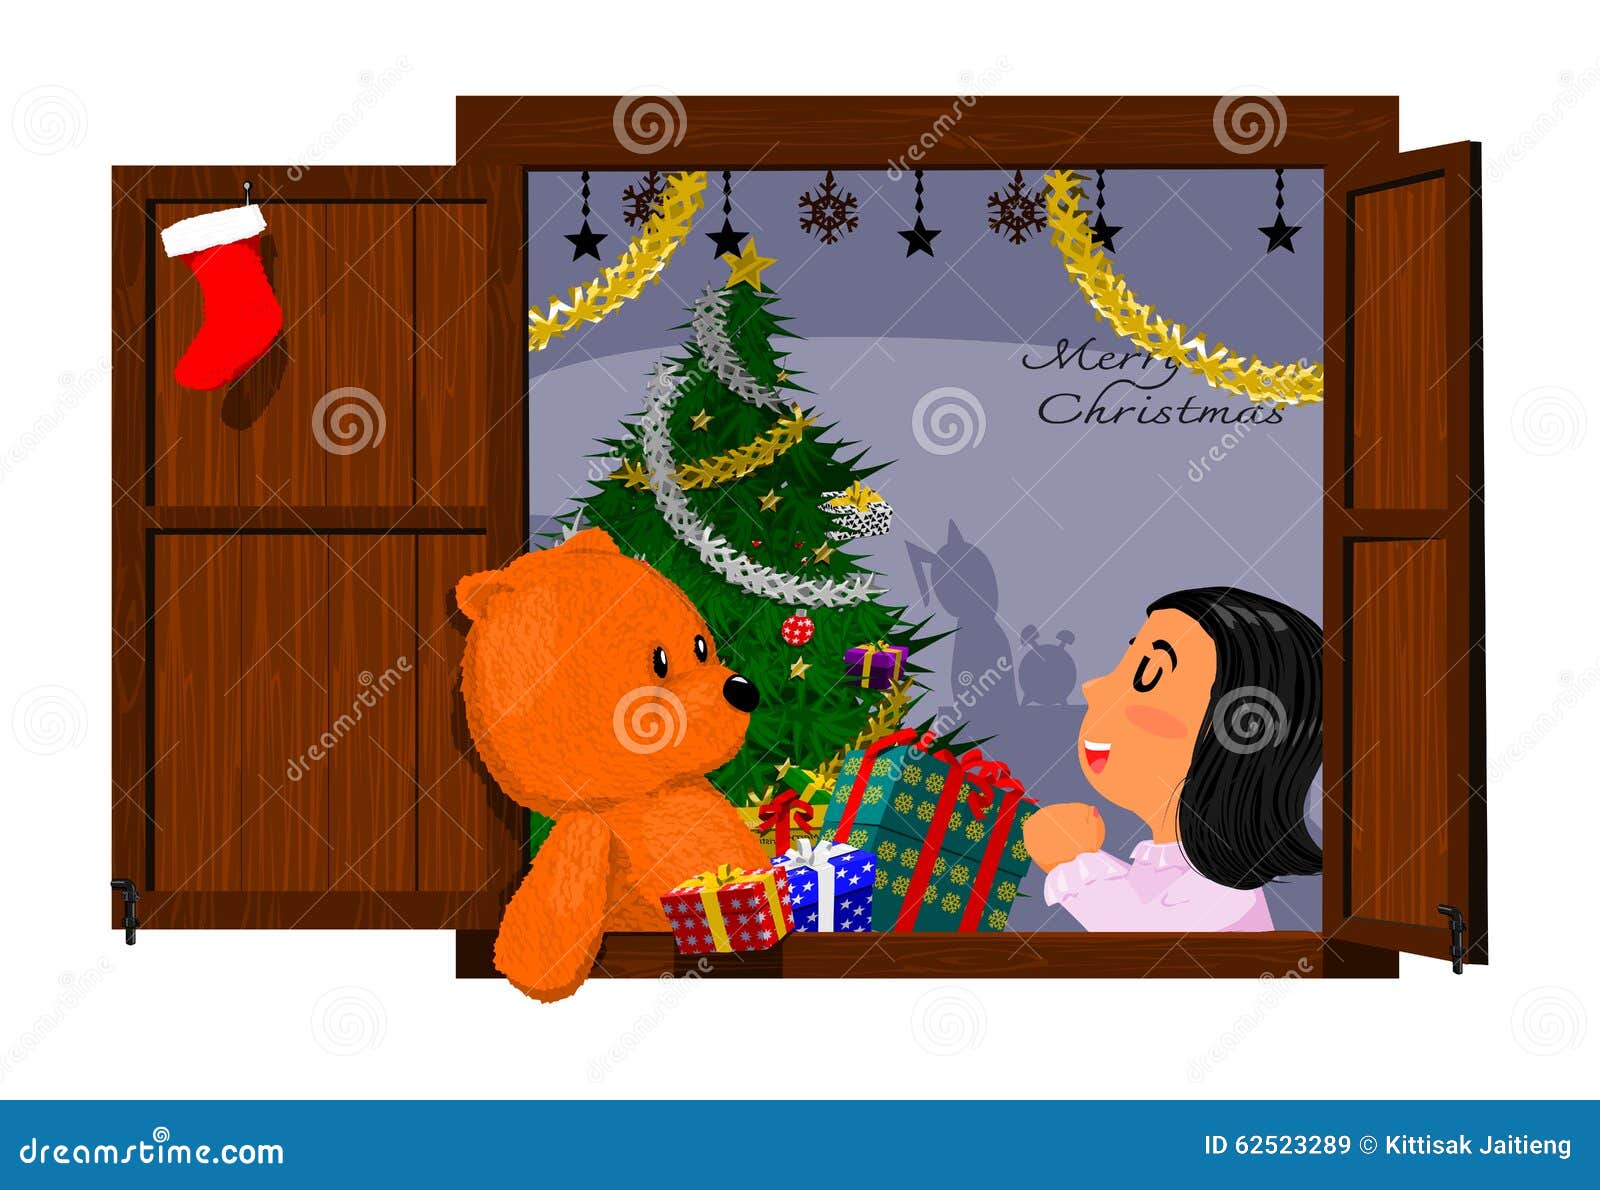 child-pray-christmas-background-little-girl-christmas-night-62523289.jpg